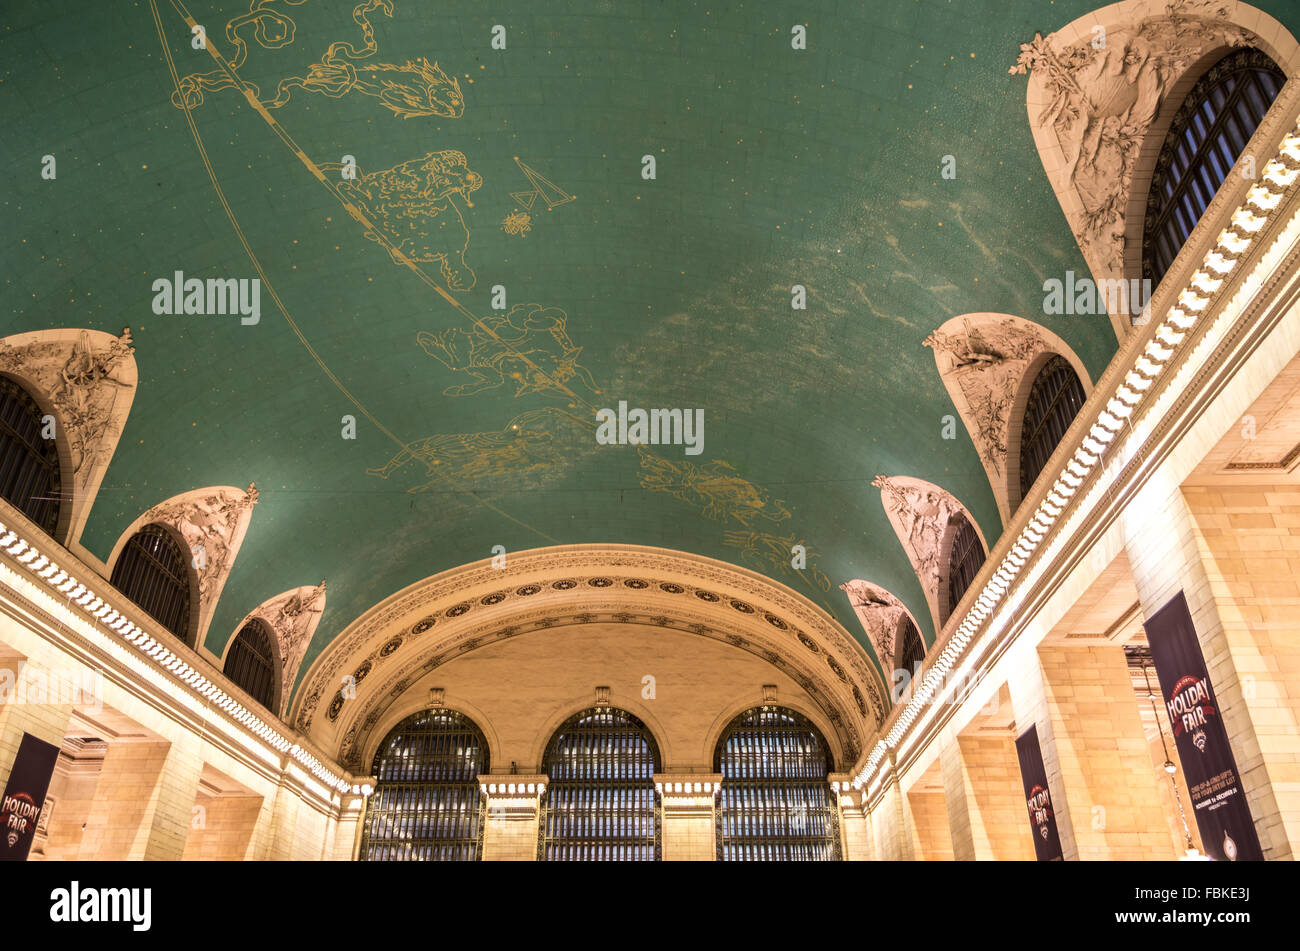 Blick auf die grüne Decke der Haupthalle des Grand Central Terminal mit einer astronomischen Themen Wandbild in Gold. Stockfoto